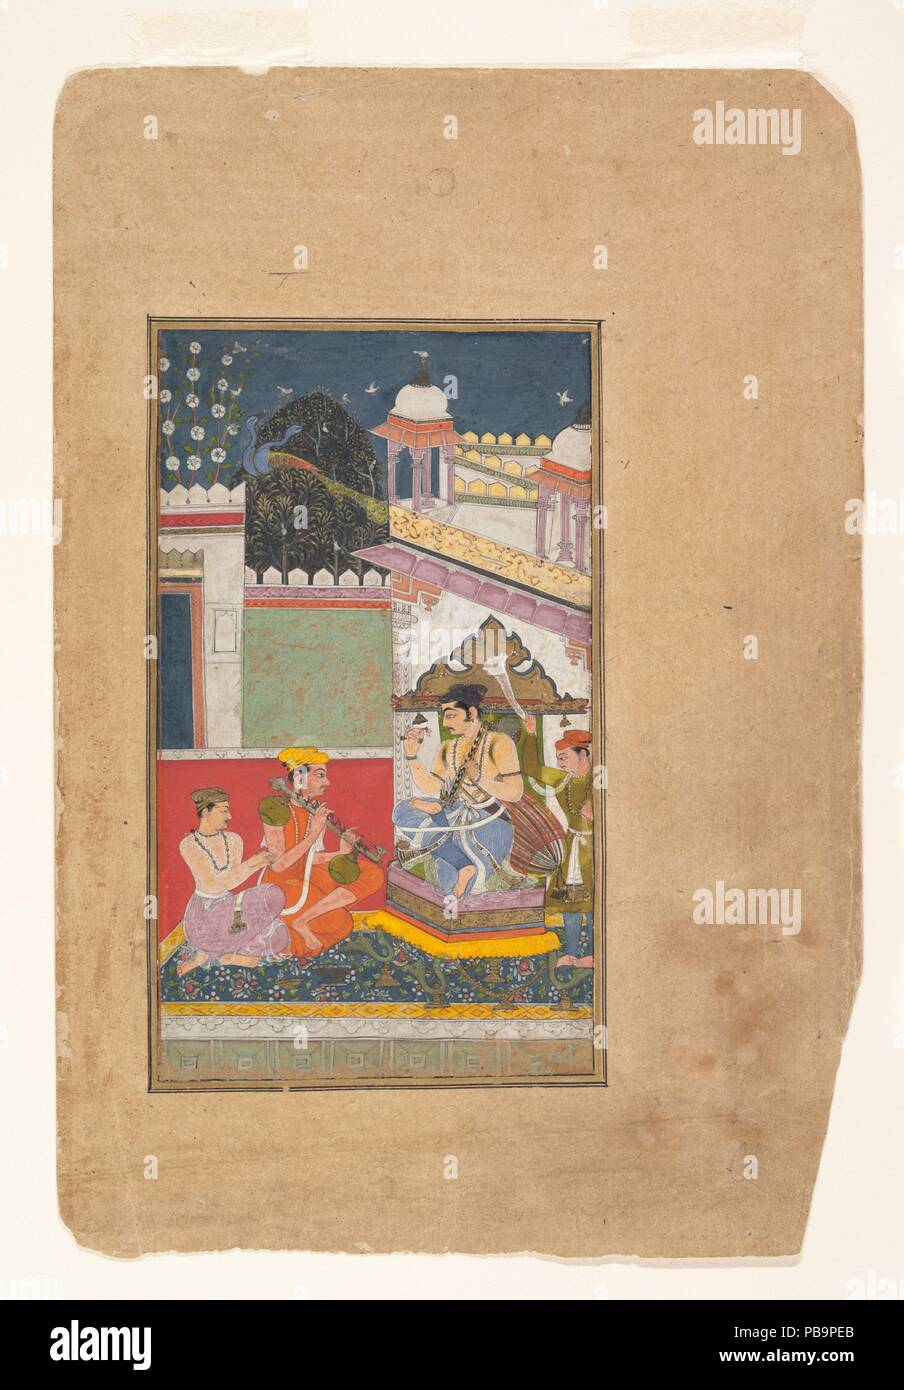 Shri Raga: Folio aus einem ragamala Serie (Garland musikalischer Modi). Kultur: Indien (rajasthan, Bundi). Abmessungen: 8 1/4 x 4 3/4 in. (20,9 x 12,1 cm). Datum: Mitte des 17. Jahrhunderts. Hier der Herrscher gesehen wird, spielt ein Rudra Vina, die von zwei Musikern begleitet. Diese seltene Darstellung der Herrscher als Interpret erscheint in Gemälden aus der Bundi und Kota Gerichte. Die Arbeit auch Referenzen der Fall Harvest Festivals, eine Zeit zum Entspannen und Feiern. Die komplexe Architektur und das Juwel - wie Behandlung der blühende Baum sind typische von Bundi Malerei. Museum: Metropolitan Museum of Art, New York, U Stockfoto